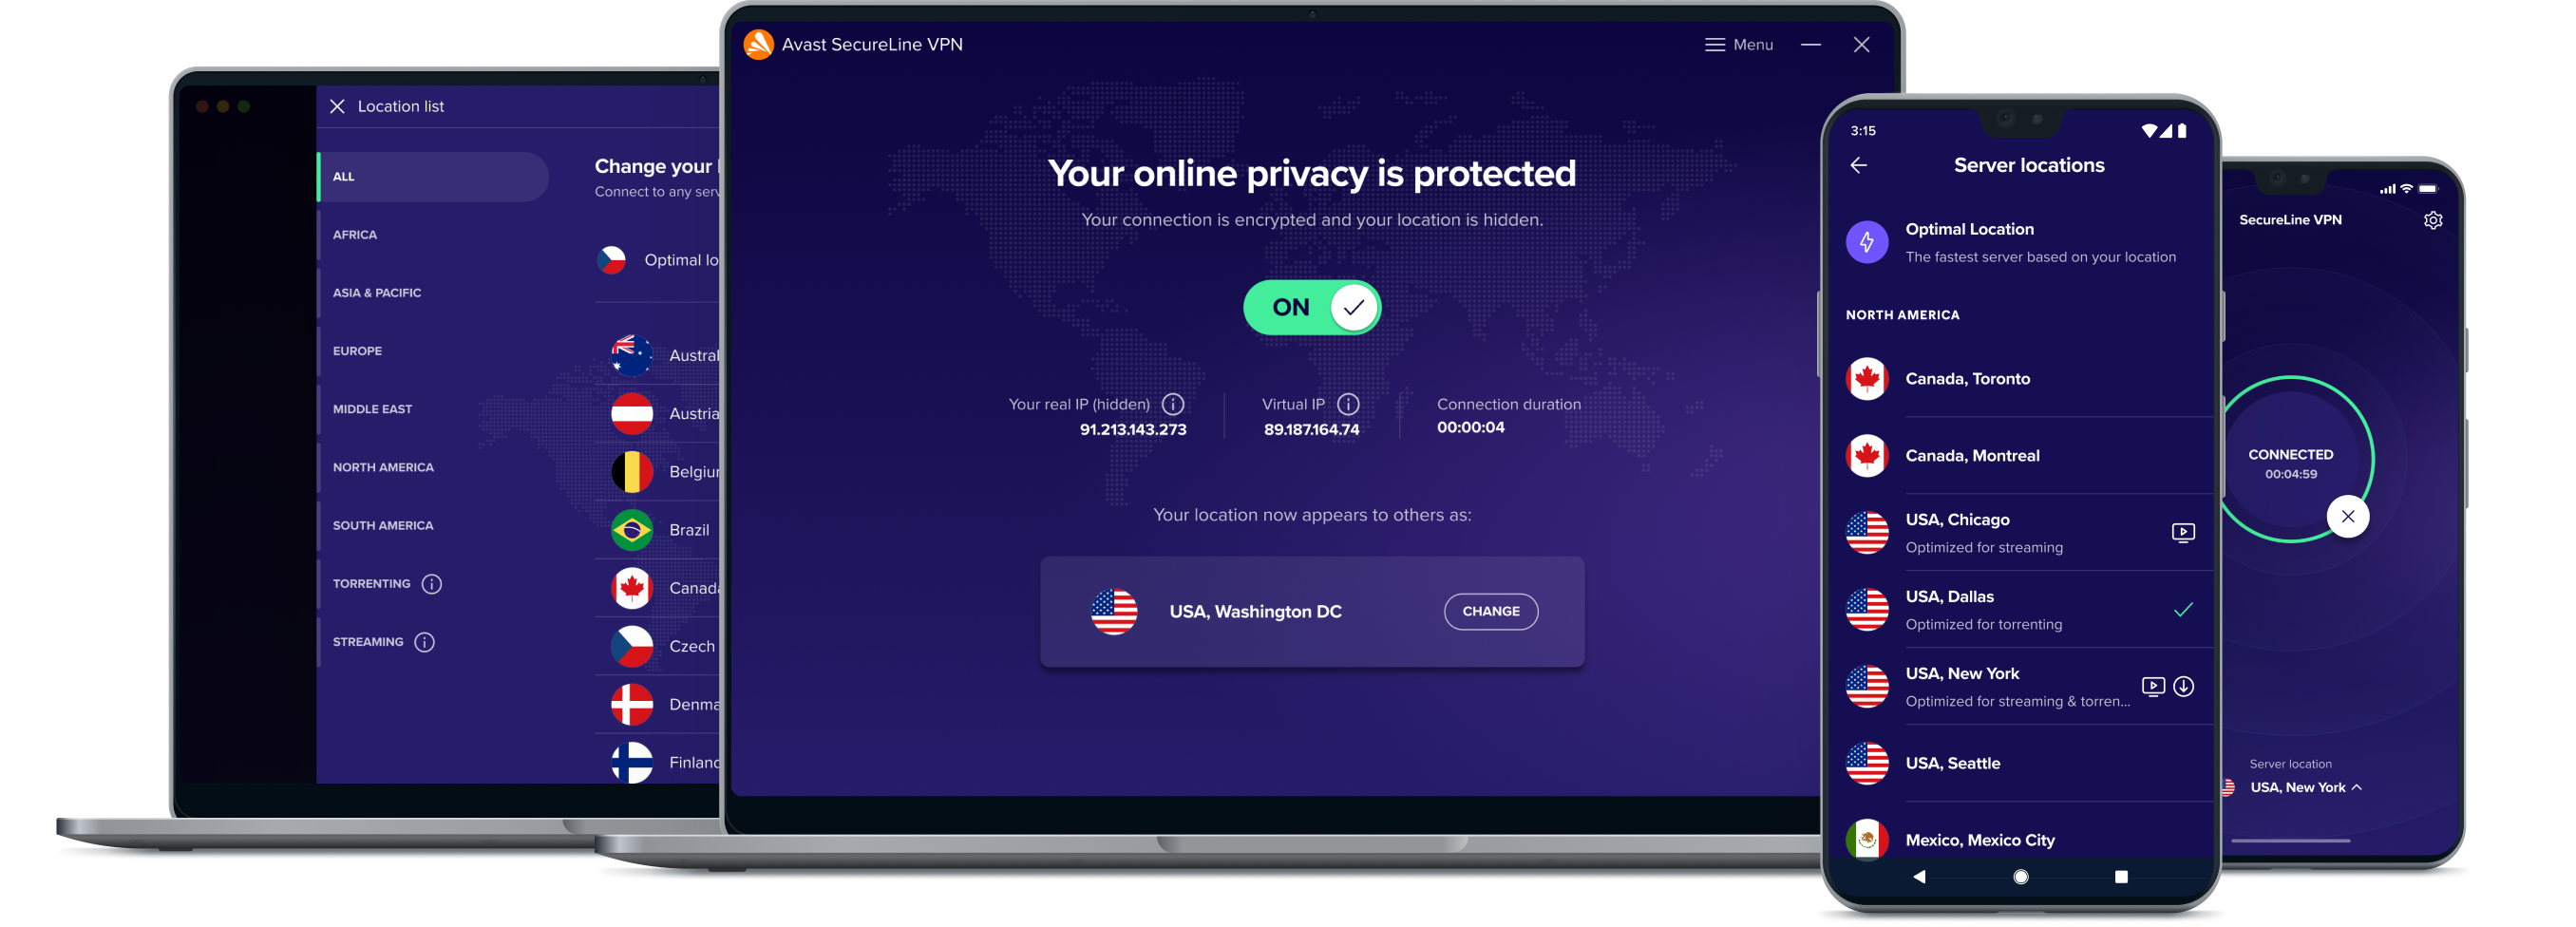 Dapatkan kebebasan lebih saat online dengan layanan VPN kami